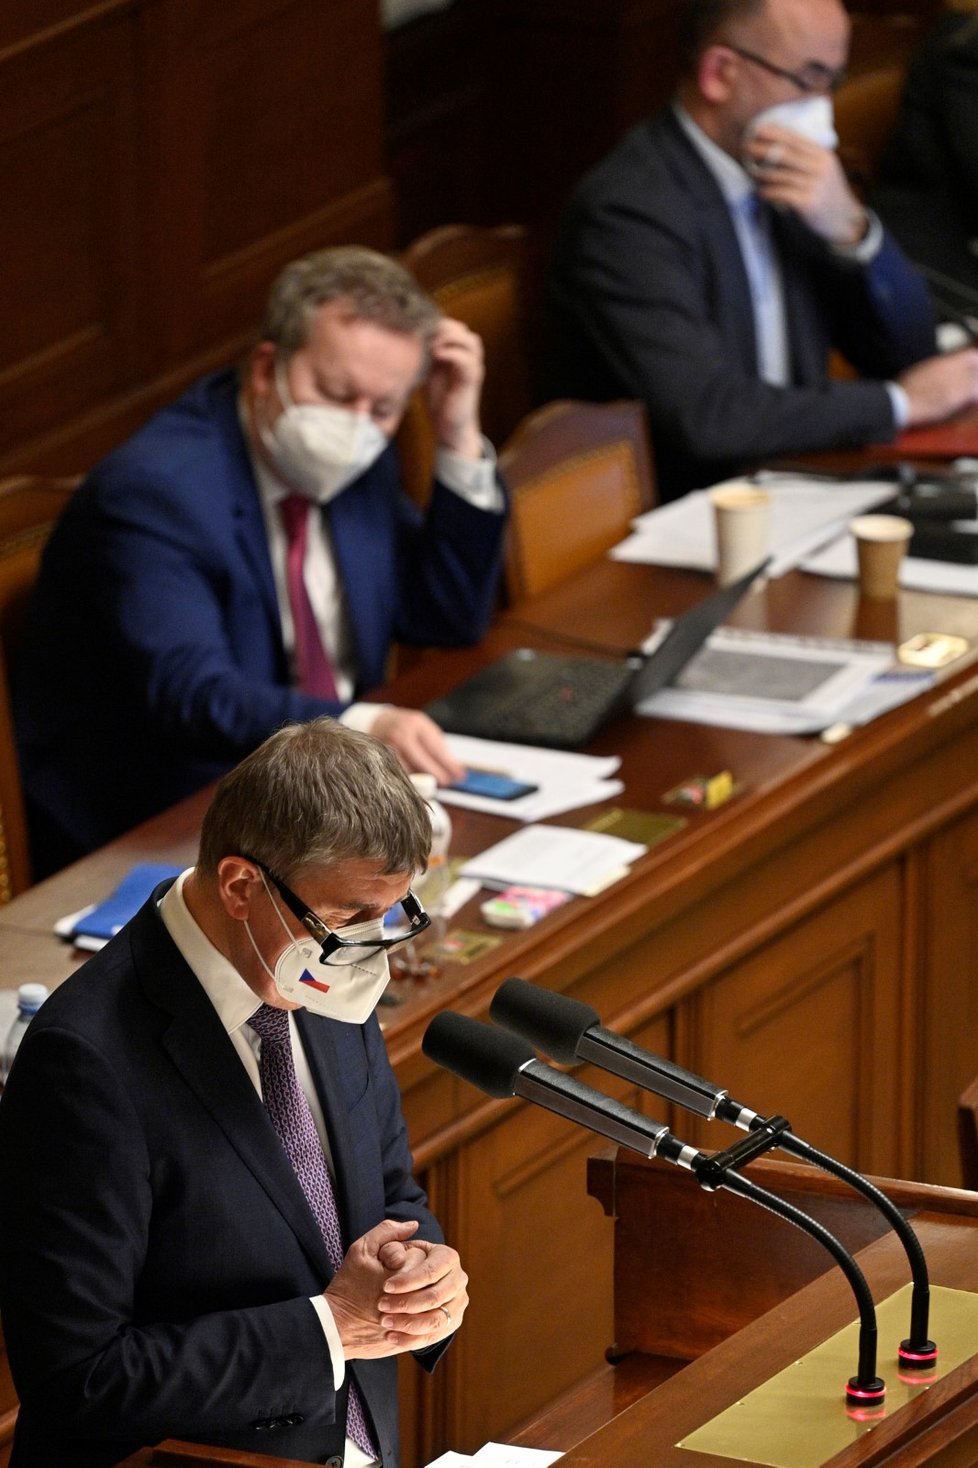 Premiér Andrej Babiš opět žádá Sněmovnu o prodloužení nouzového stavu. Poslanci ale chtějí, aby vláda vyhlásila nouzový stav zcela nový (26. 2. 2021).